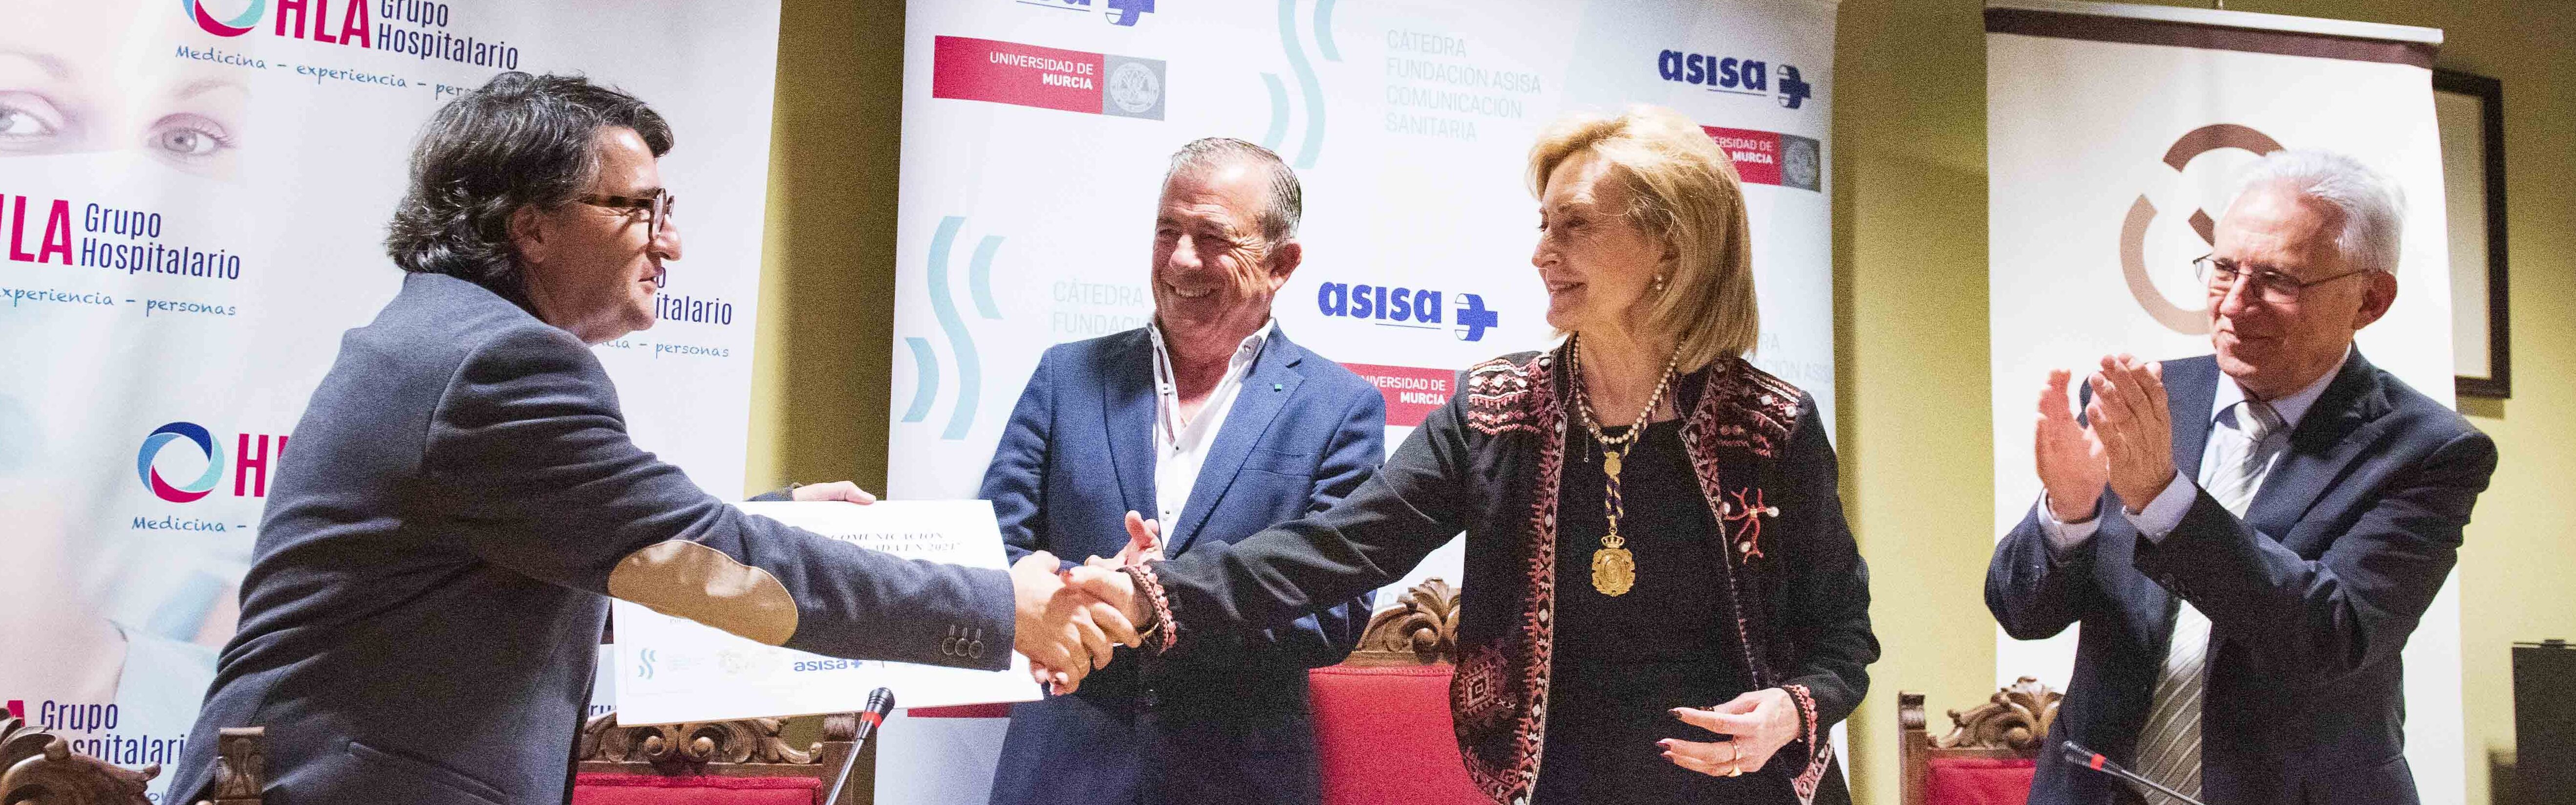 El periodista Diego Sánchez gana el premio de la Cátedra Asisa de Comunicación Sanitaria al mejor trabajo periodístico sobre la Covid-19